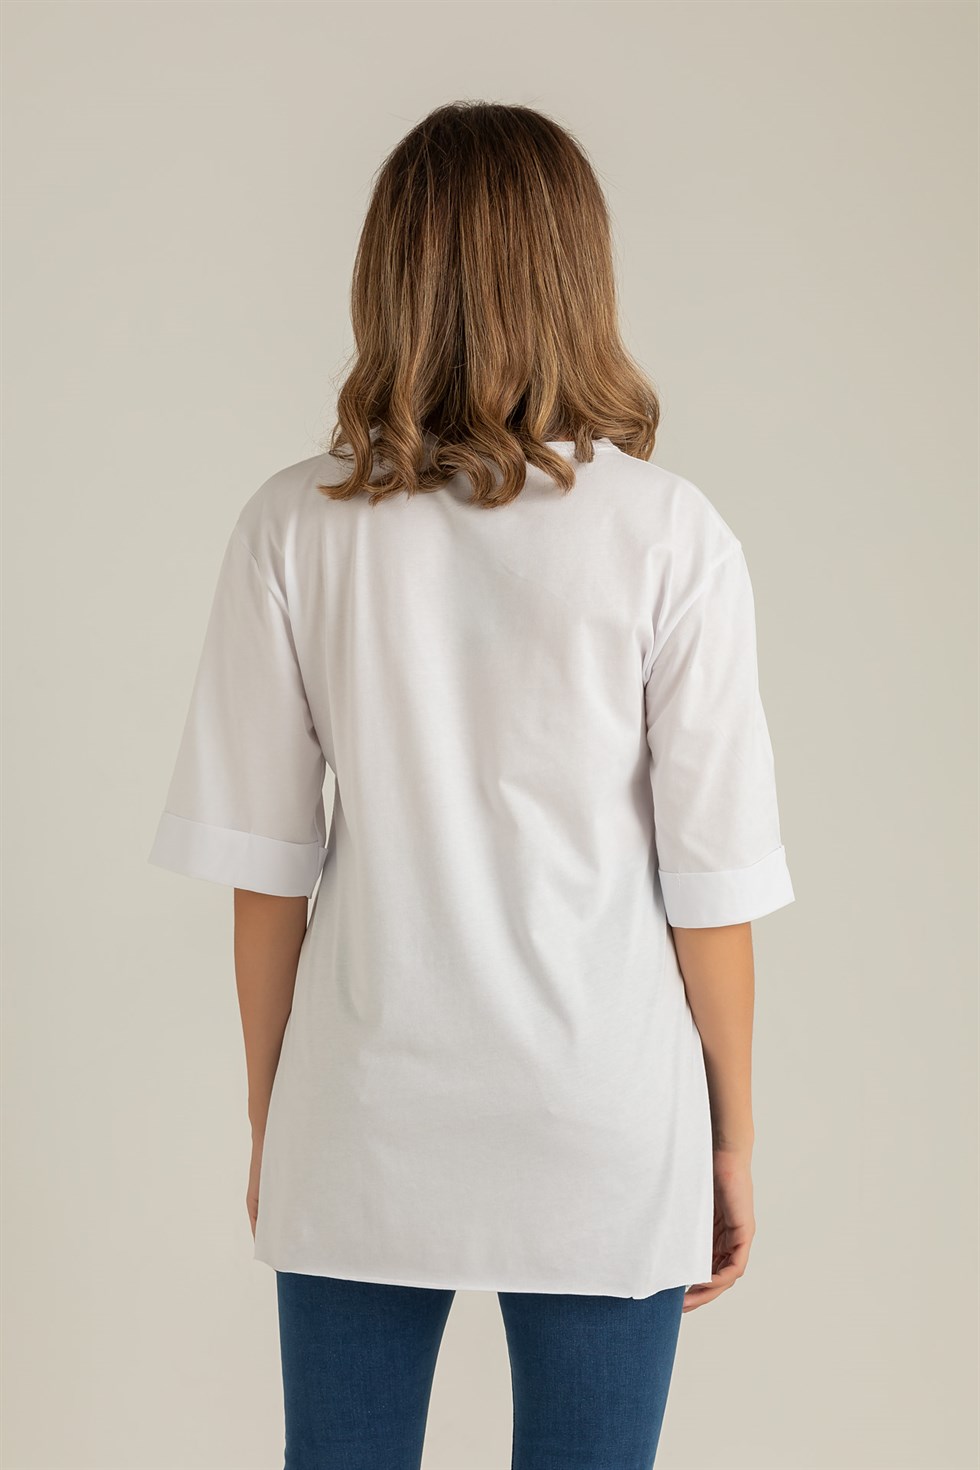 Deniz Butik Kadın Baskılı Salaş T-Shirt - BEYAZ. 4